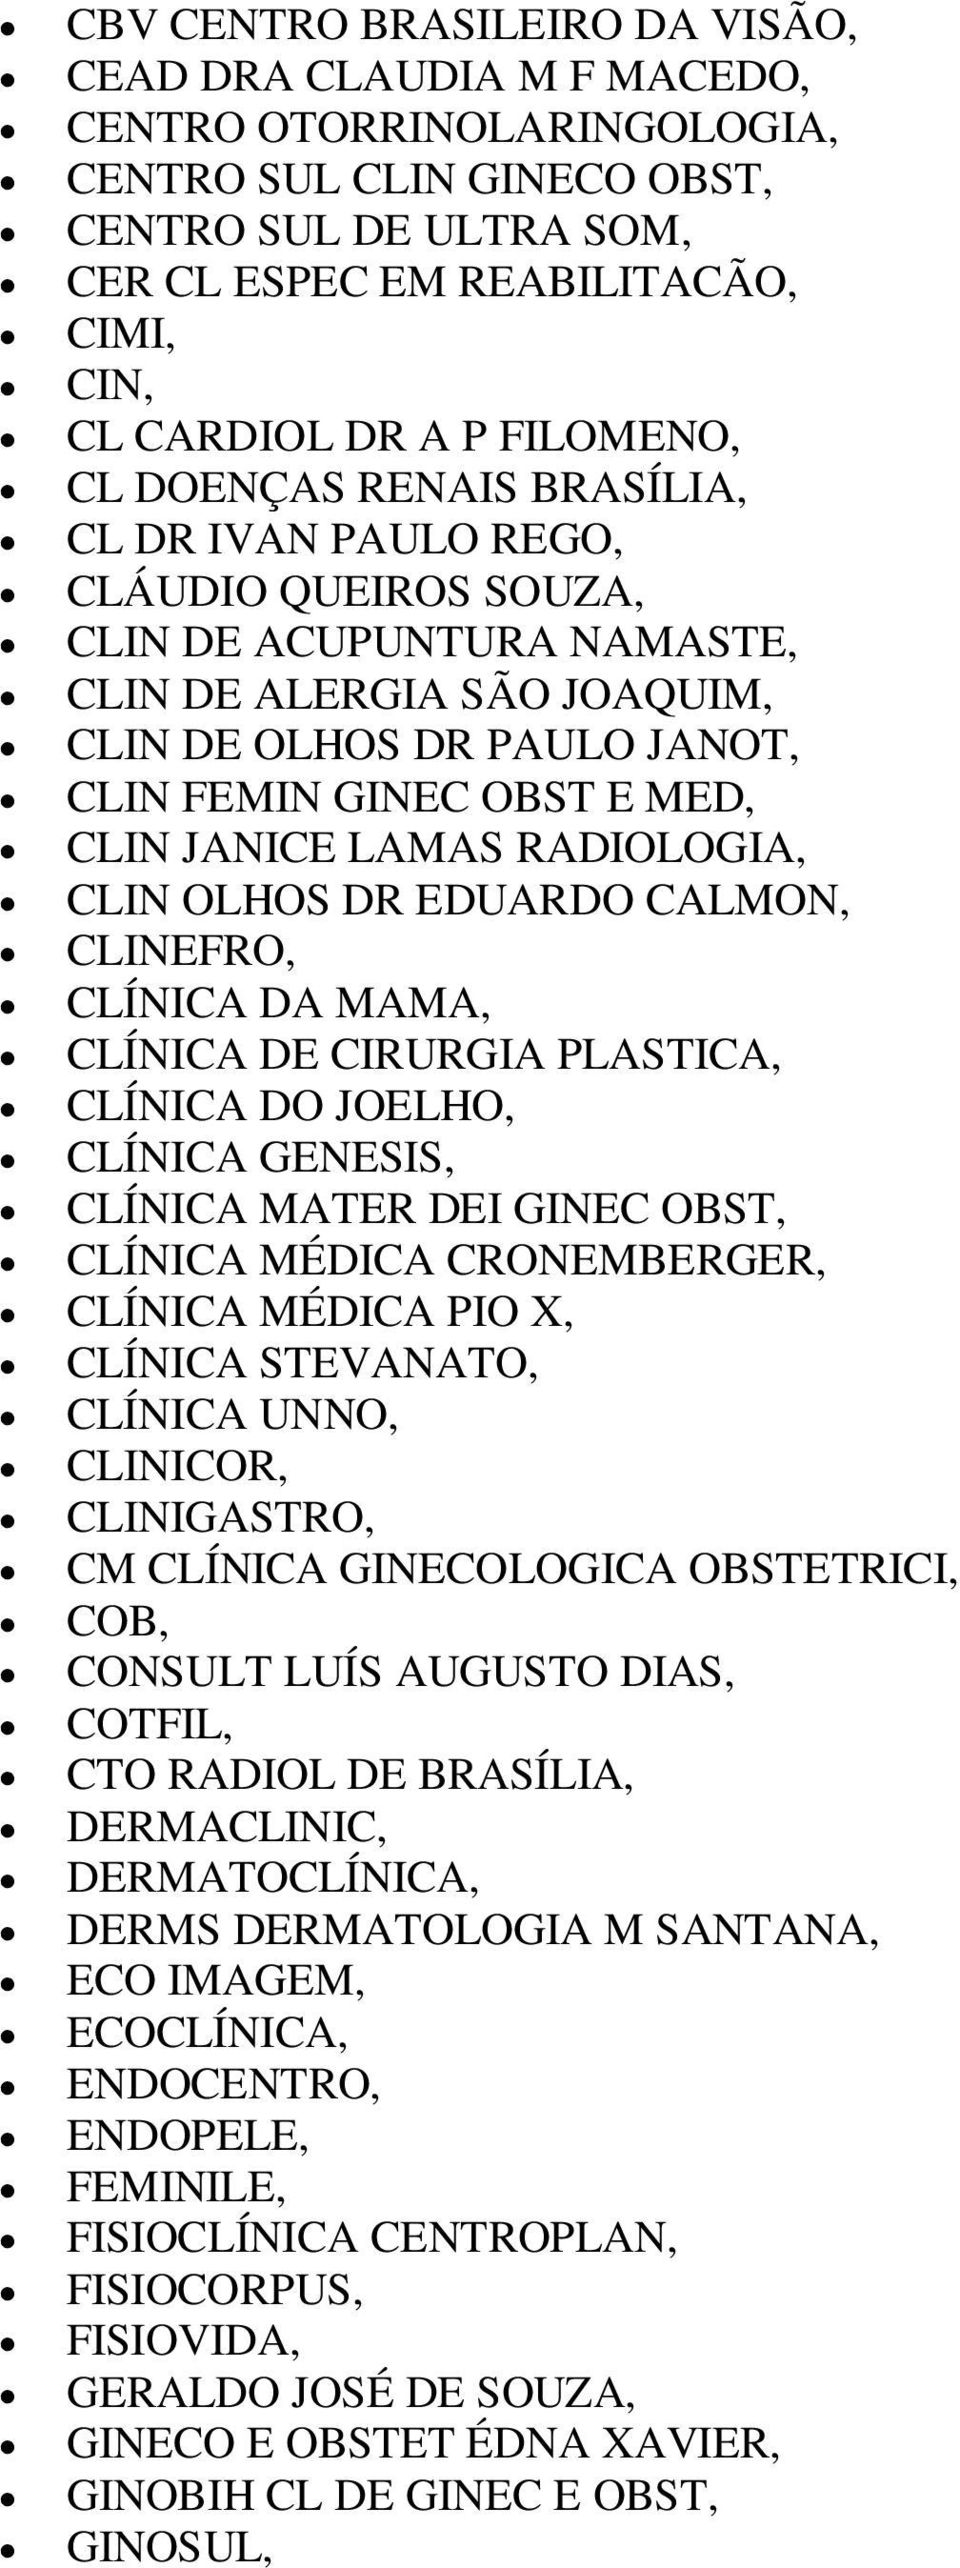 MED, CLIN JANICE LAMAS RADIOLOGIA, CLIN OLHOS DR EDUARDO CALMON, CLINEFRO, CLÍNICA DA MAMA, CLÍNICA DE CIRURGIA PLASTICA, CLÍNICA DO JOELHO, CLÍNICA GENESIS, CLÍNICA MATER DEI GINEC OBST, CLÍNICA